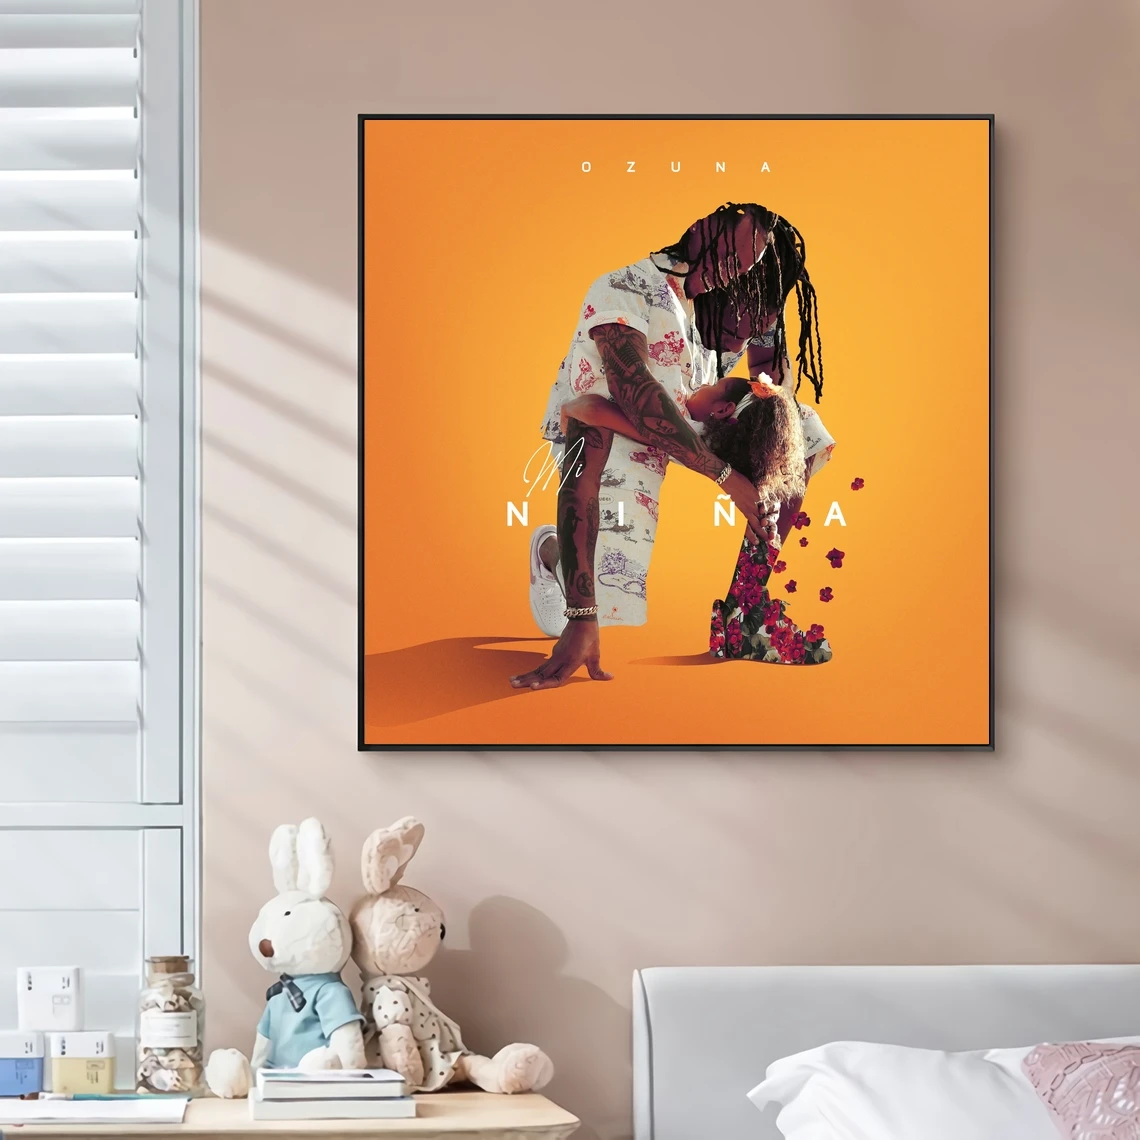 

Обложка альбома Ozuna - Mi Niña для музыки, постер на холсте в стиле хип-хоп, рэпер, поп-музыка, знаменитости, настенная живопись, художественное ук...